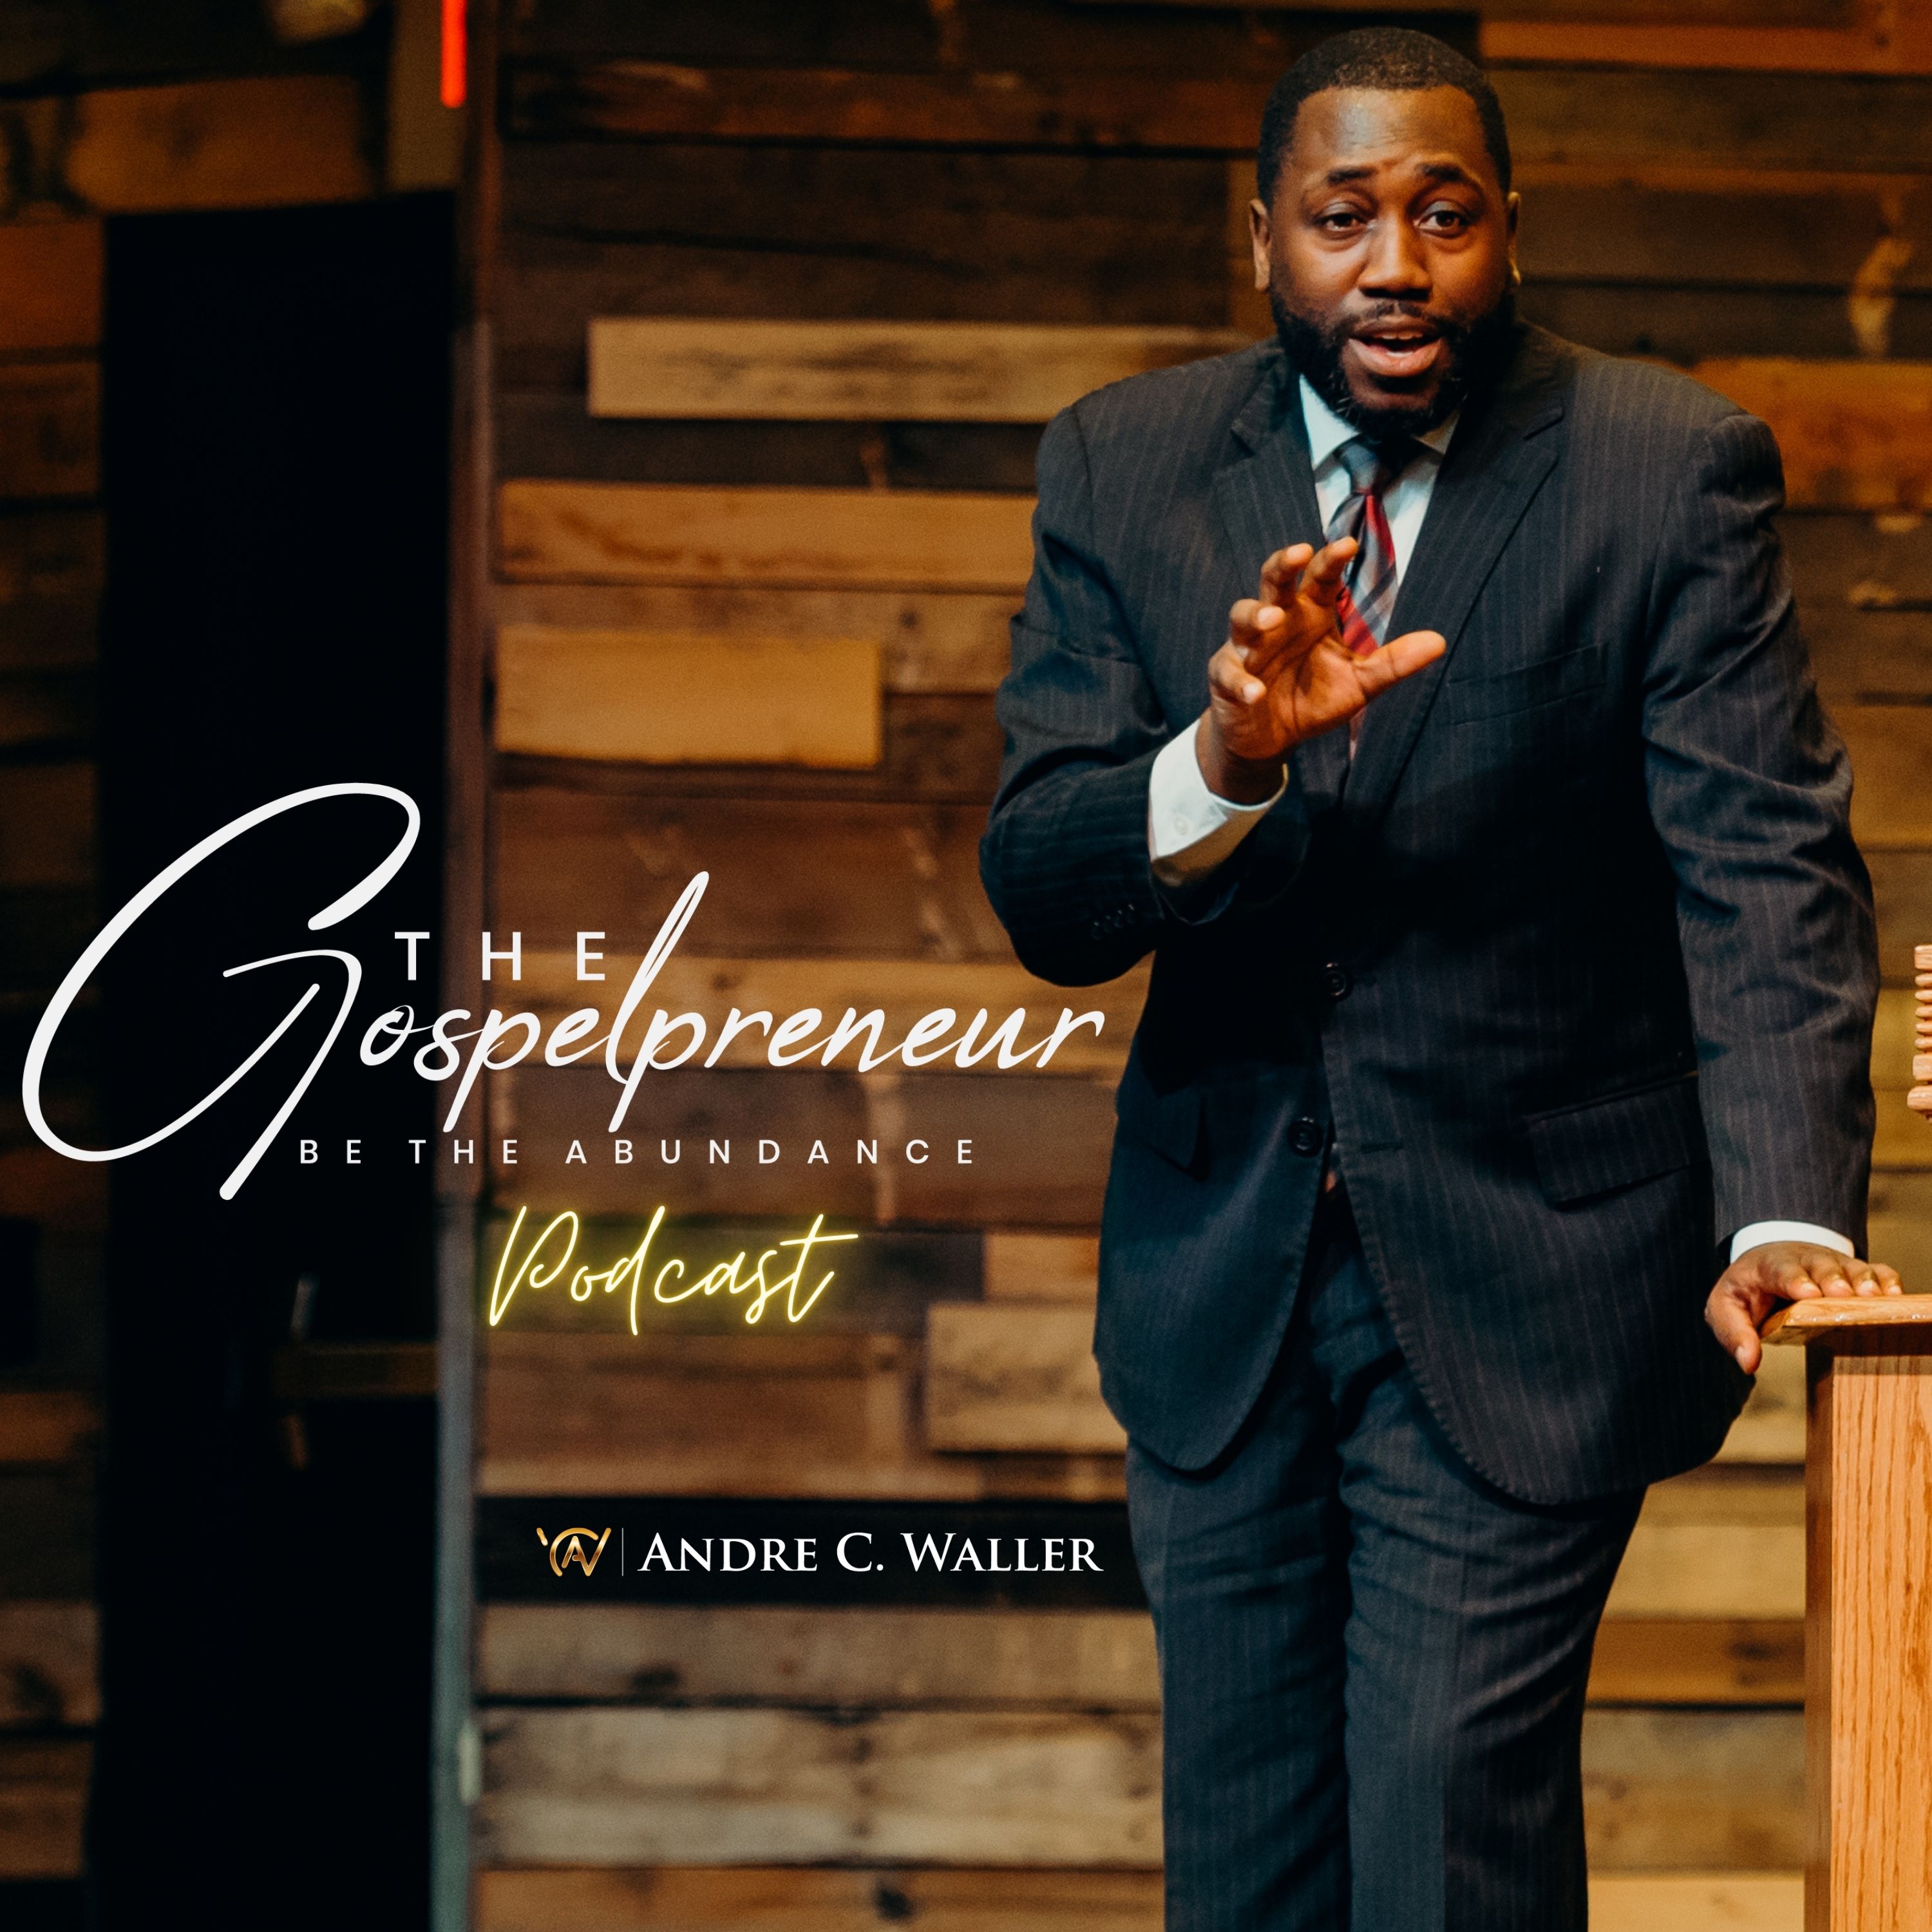 ACW: The Gospelpreneur